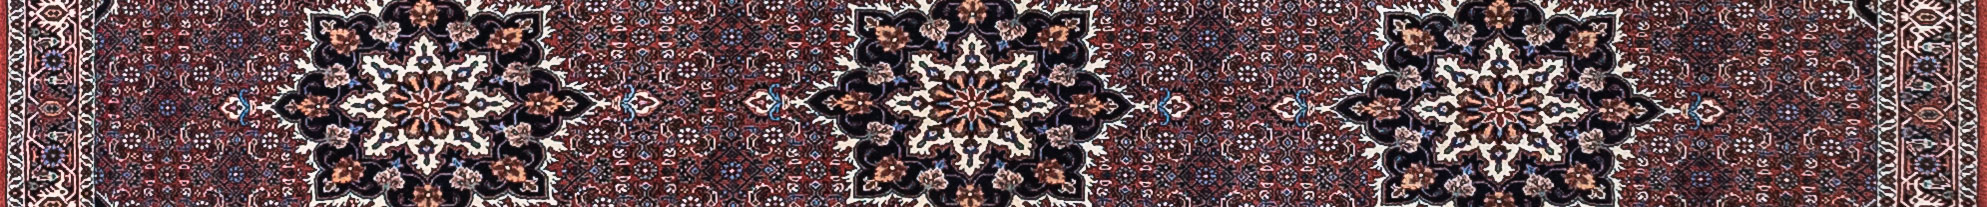 Bidjar Persian Carpet Rug N1Carpet Canada Montreal Tapis Persan 1750